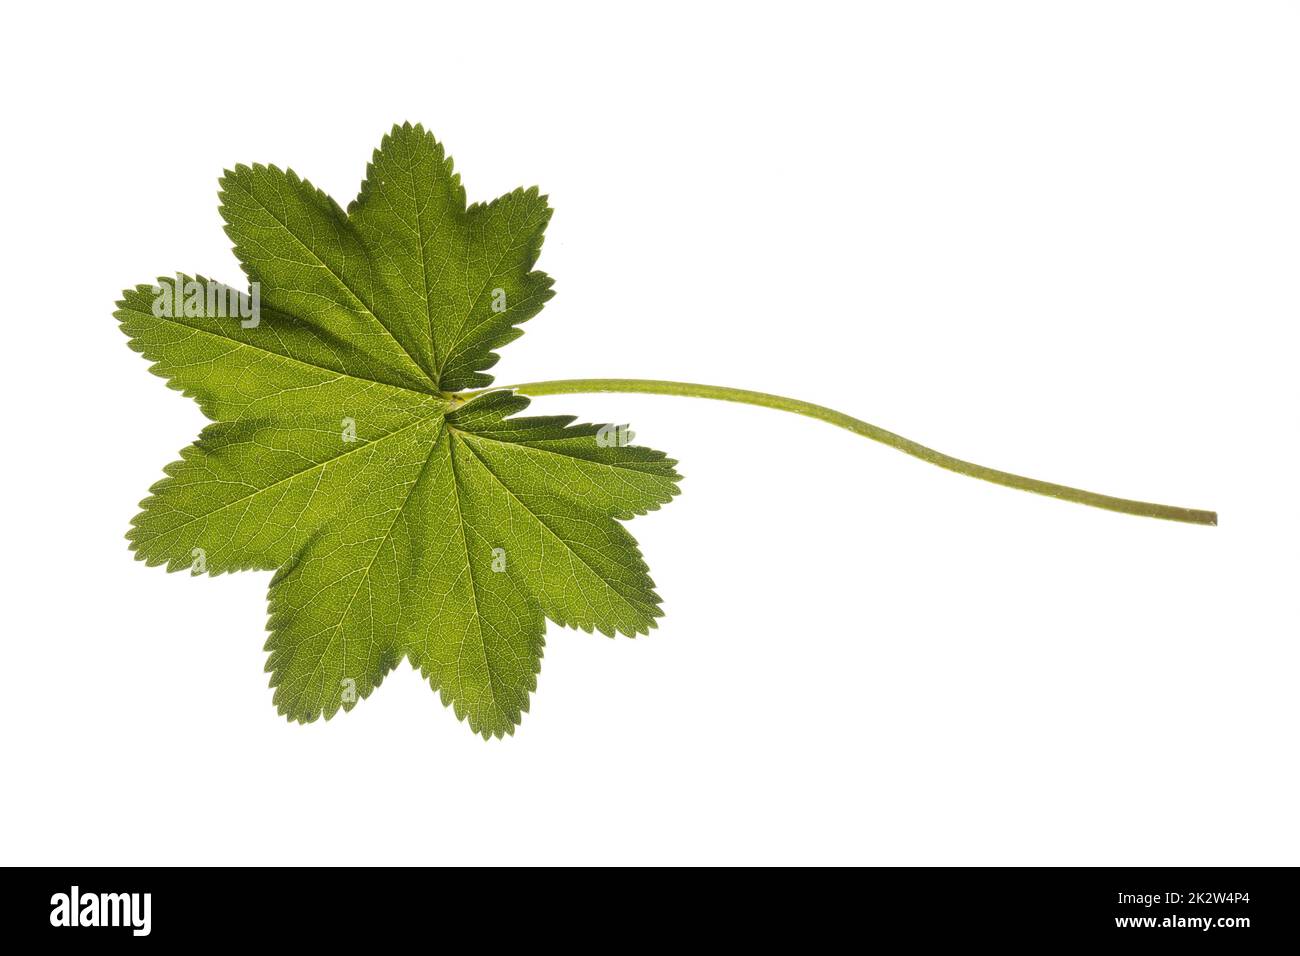 Gewöhnlicher Frauenmantel, Frauenmantel, Alchemilla vulgaris, Lady´s Mantle, Blatt, Blätter, leaf, leaves Stock Photo